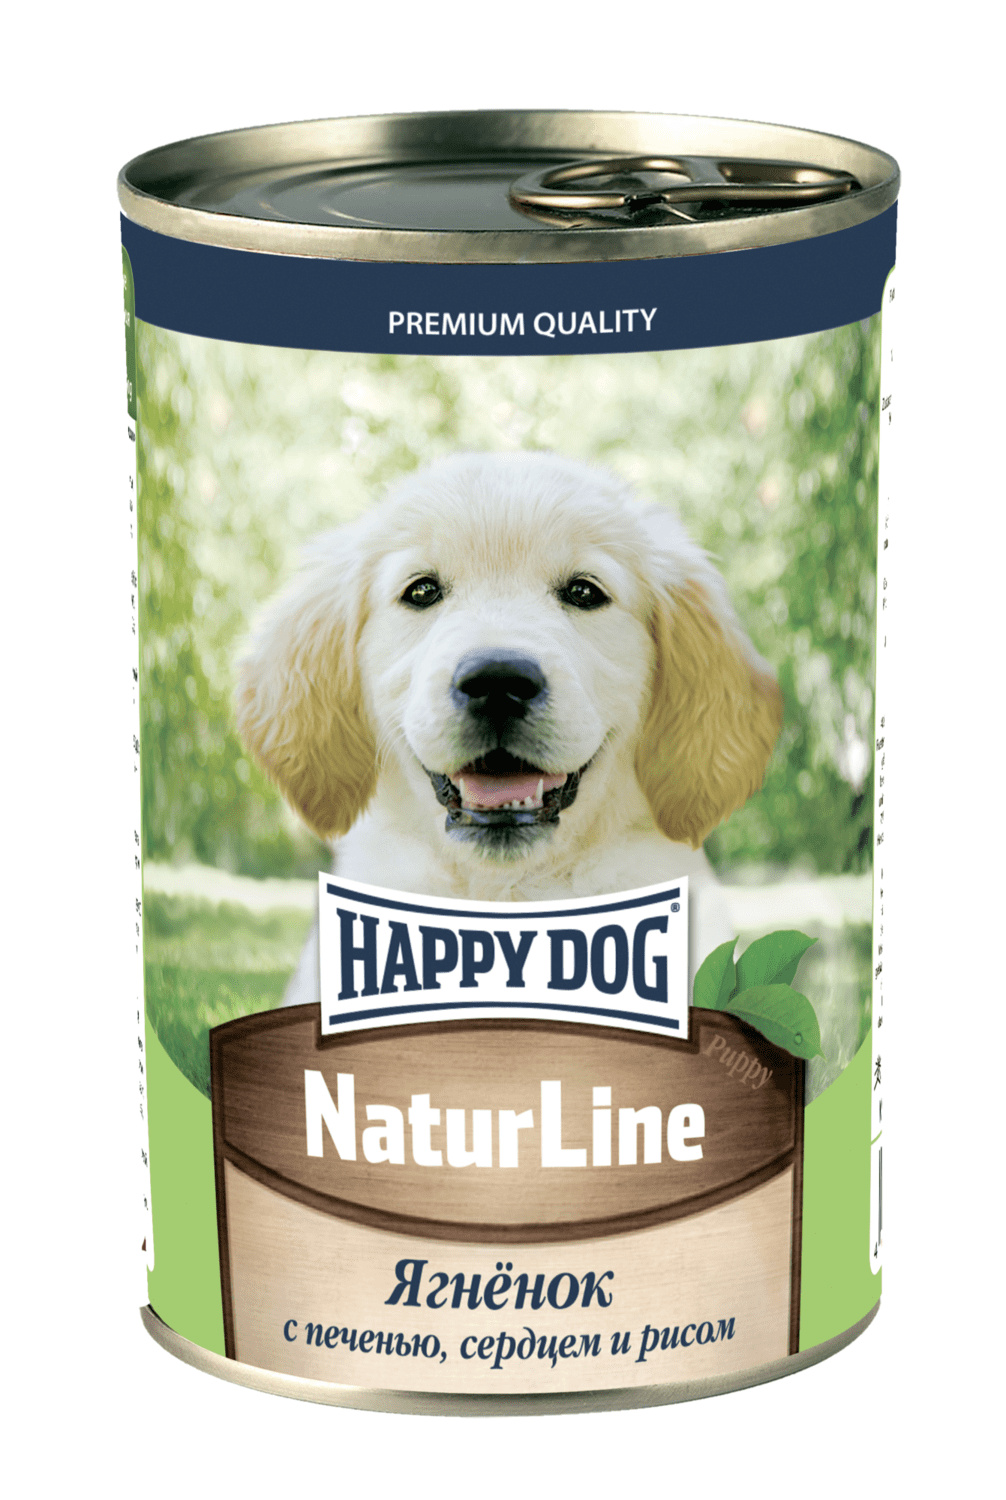 Happy dog Happy dog консервы для щенков с аппетитным ягненком, печенью, сердцем и рисом (410 г)